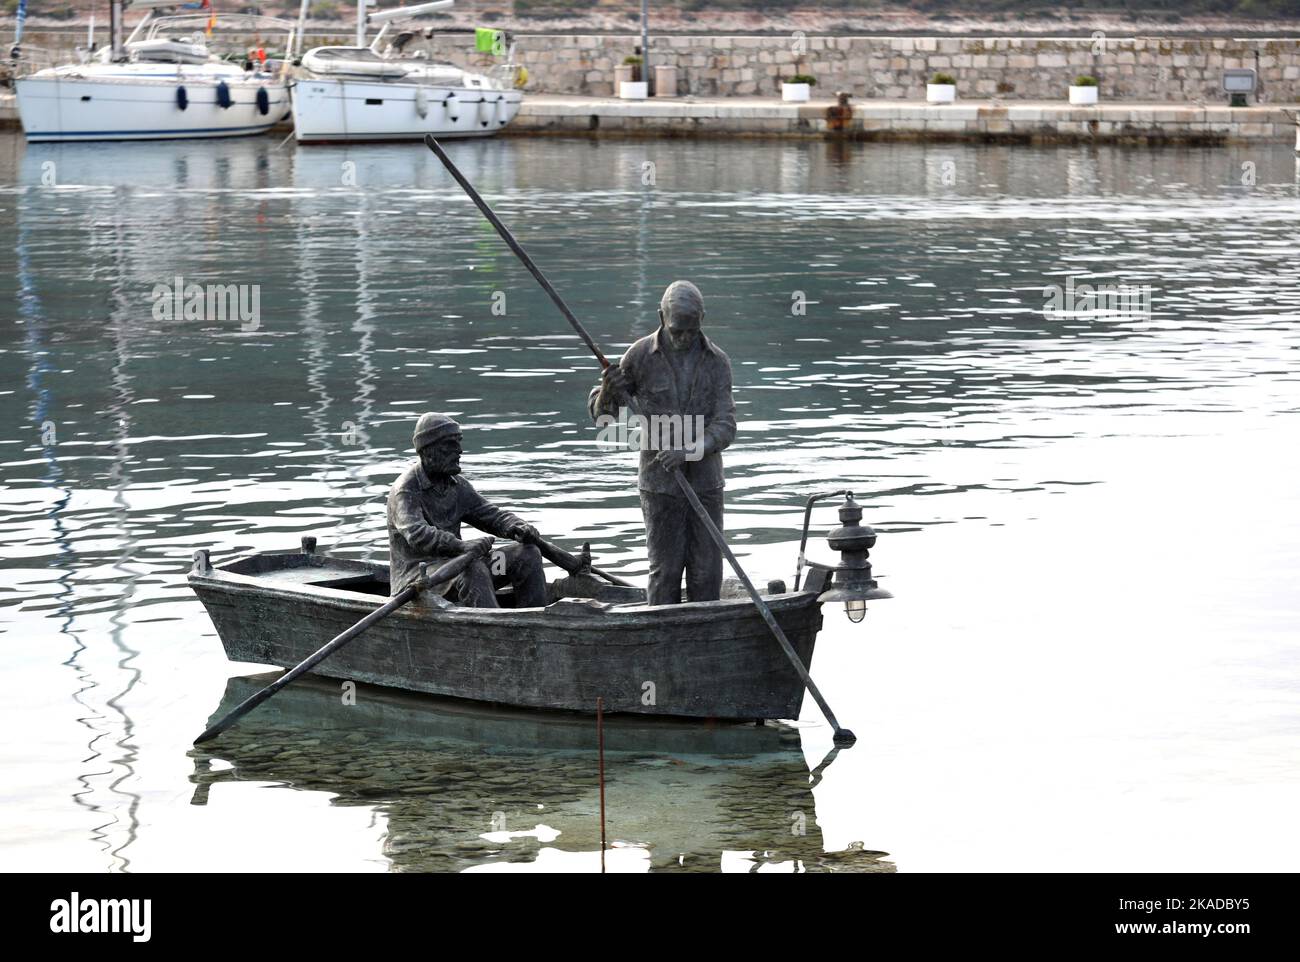 Am 02. November 2022 ist an der Meeresoberfläche in der Bucht des Hafens von Primosten in Primosten, Kroatien, ein Bronzestatue der Fischer zu sehen. Der Künstler Teo Baucic schuf ein attraktives Denkmal für zwei Fischer in einem Boot, die mit Rudern fischen. Die Wildtiere, die normalerweise nachts aufleuchtet, um Fische anzulocken, leuchten auch nachts auf diesem bronzenen Boot auf. Foto: Dusko Jaramaz/PIXSELL Stockfoto